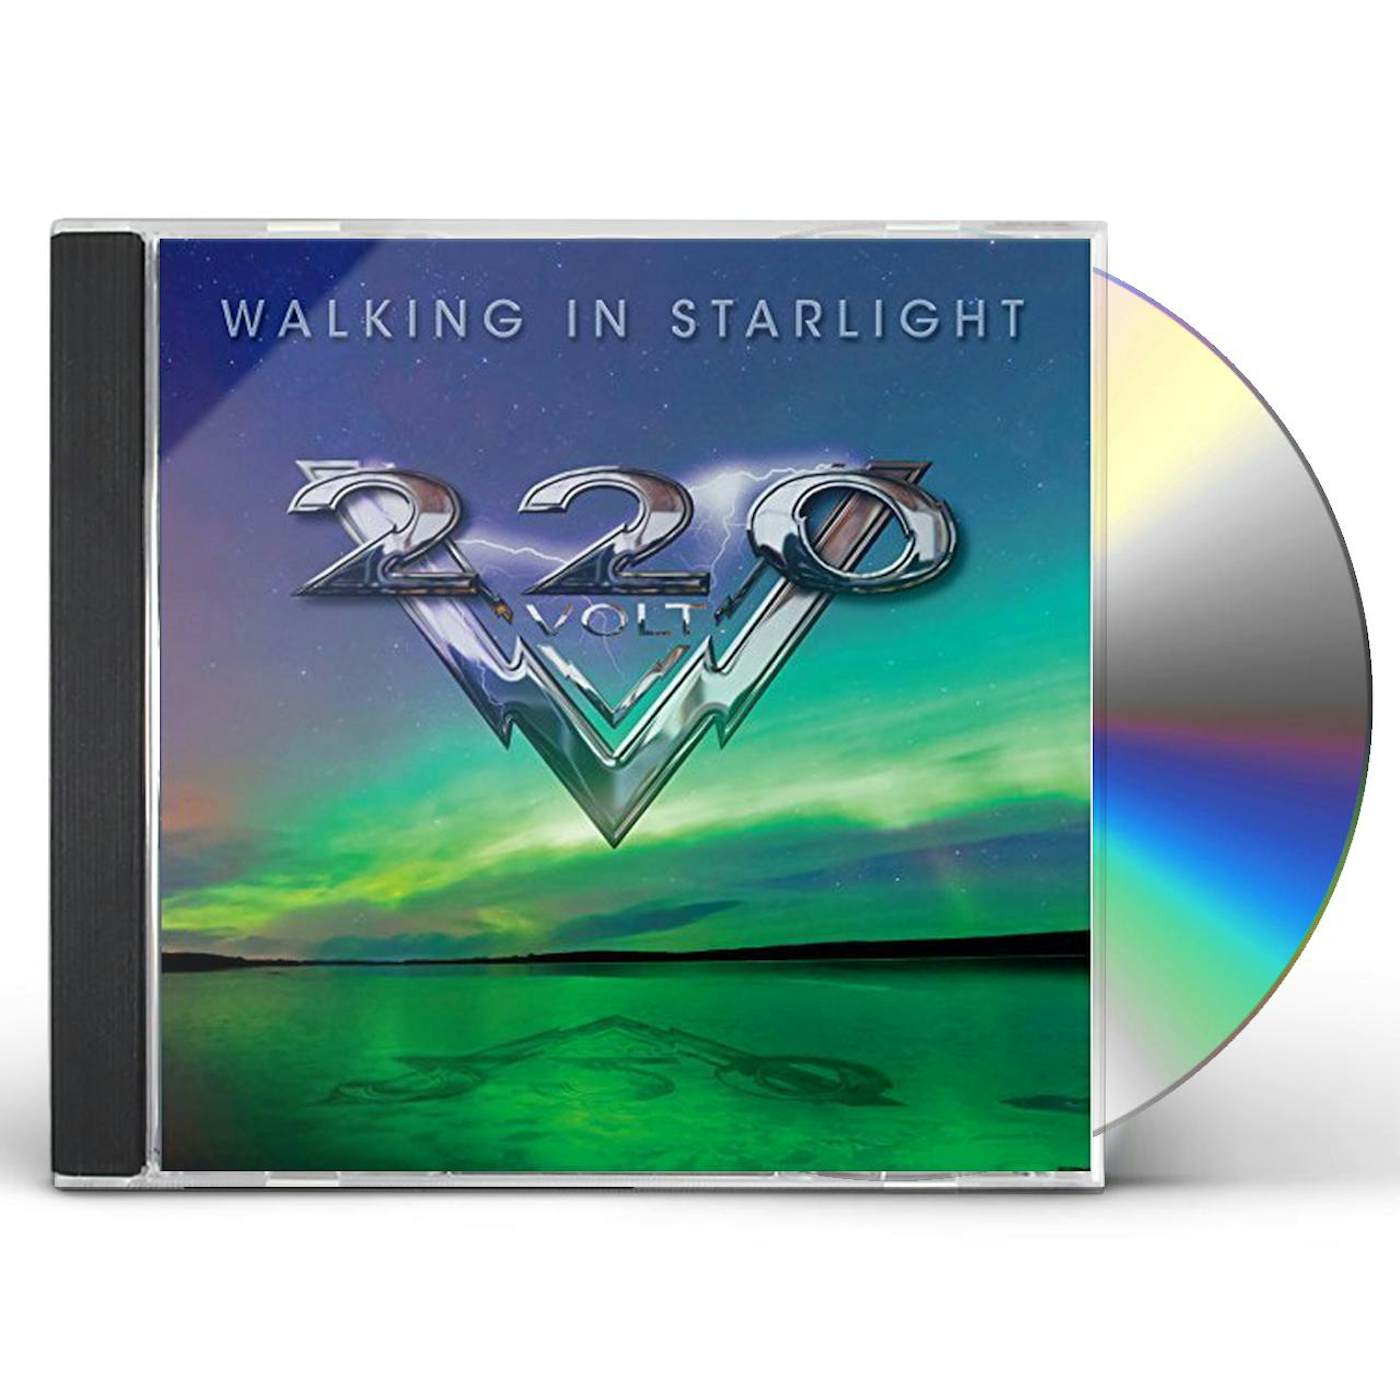 220 Volt WALKING IN STARLIGHT CD